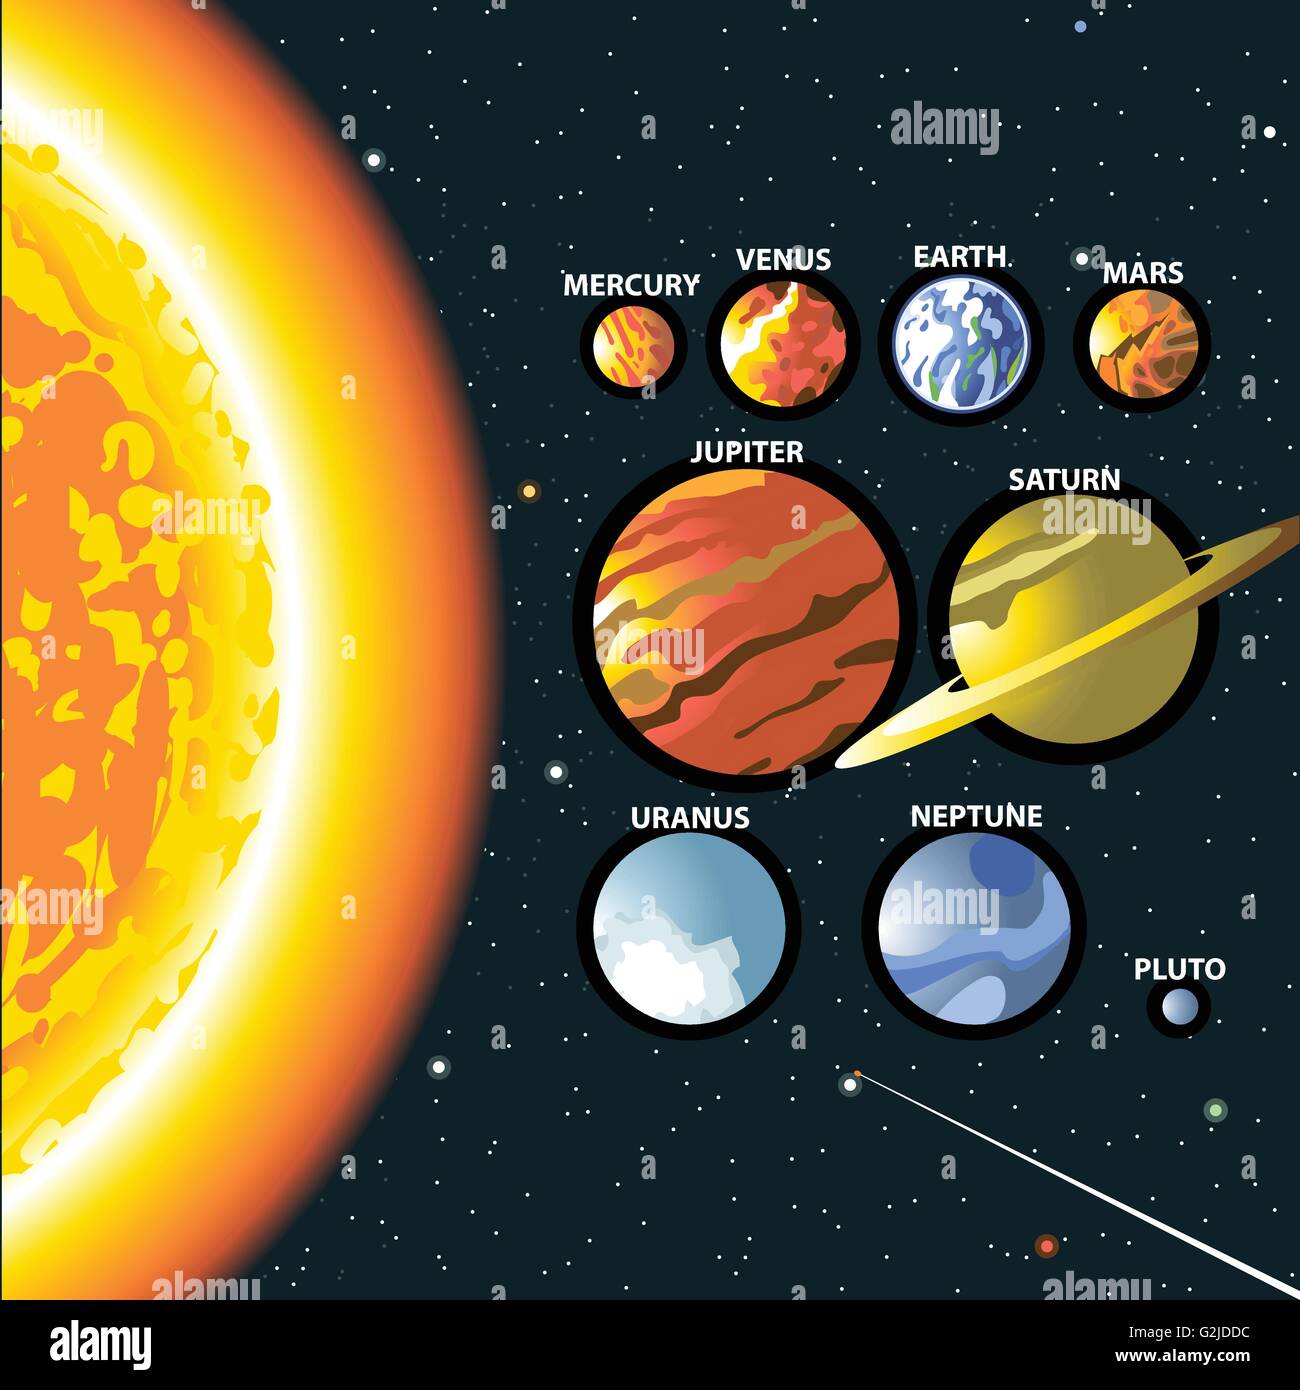 Sistema Solar El Sol Y Los Planetas De La Galaxia De La Vía Láctea Mercurio Venus Tierra 